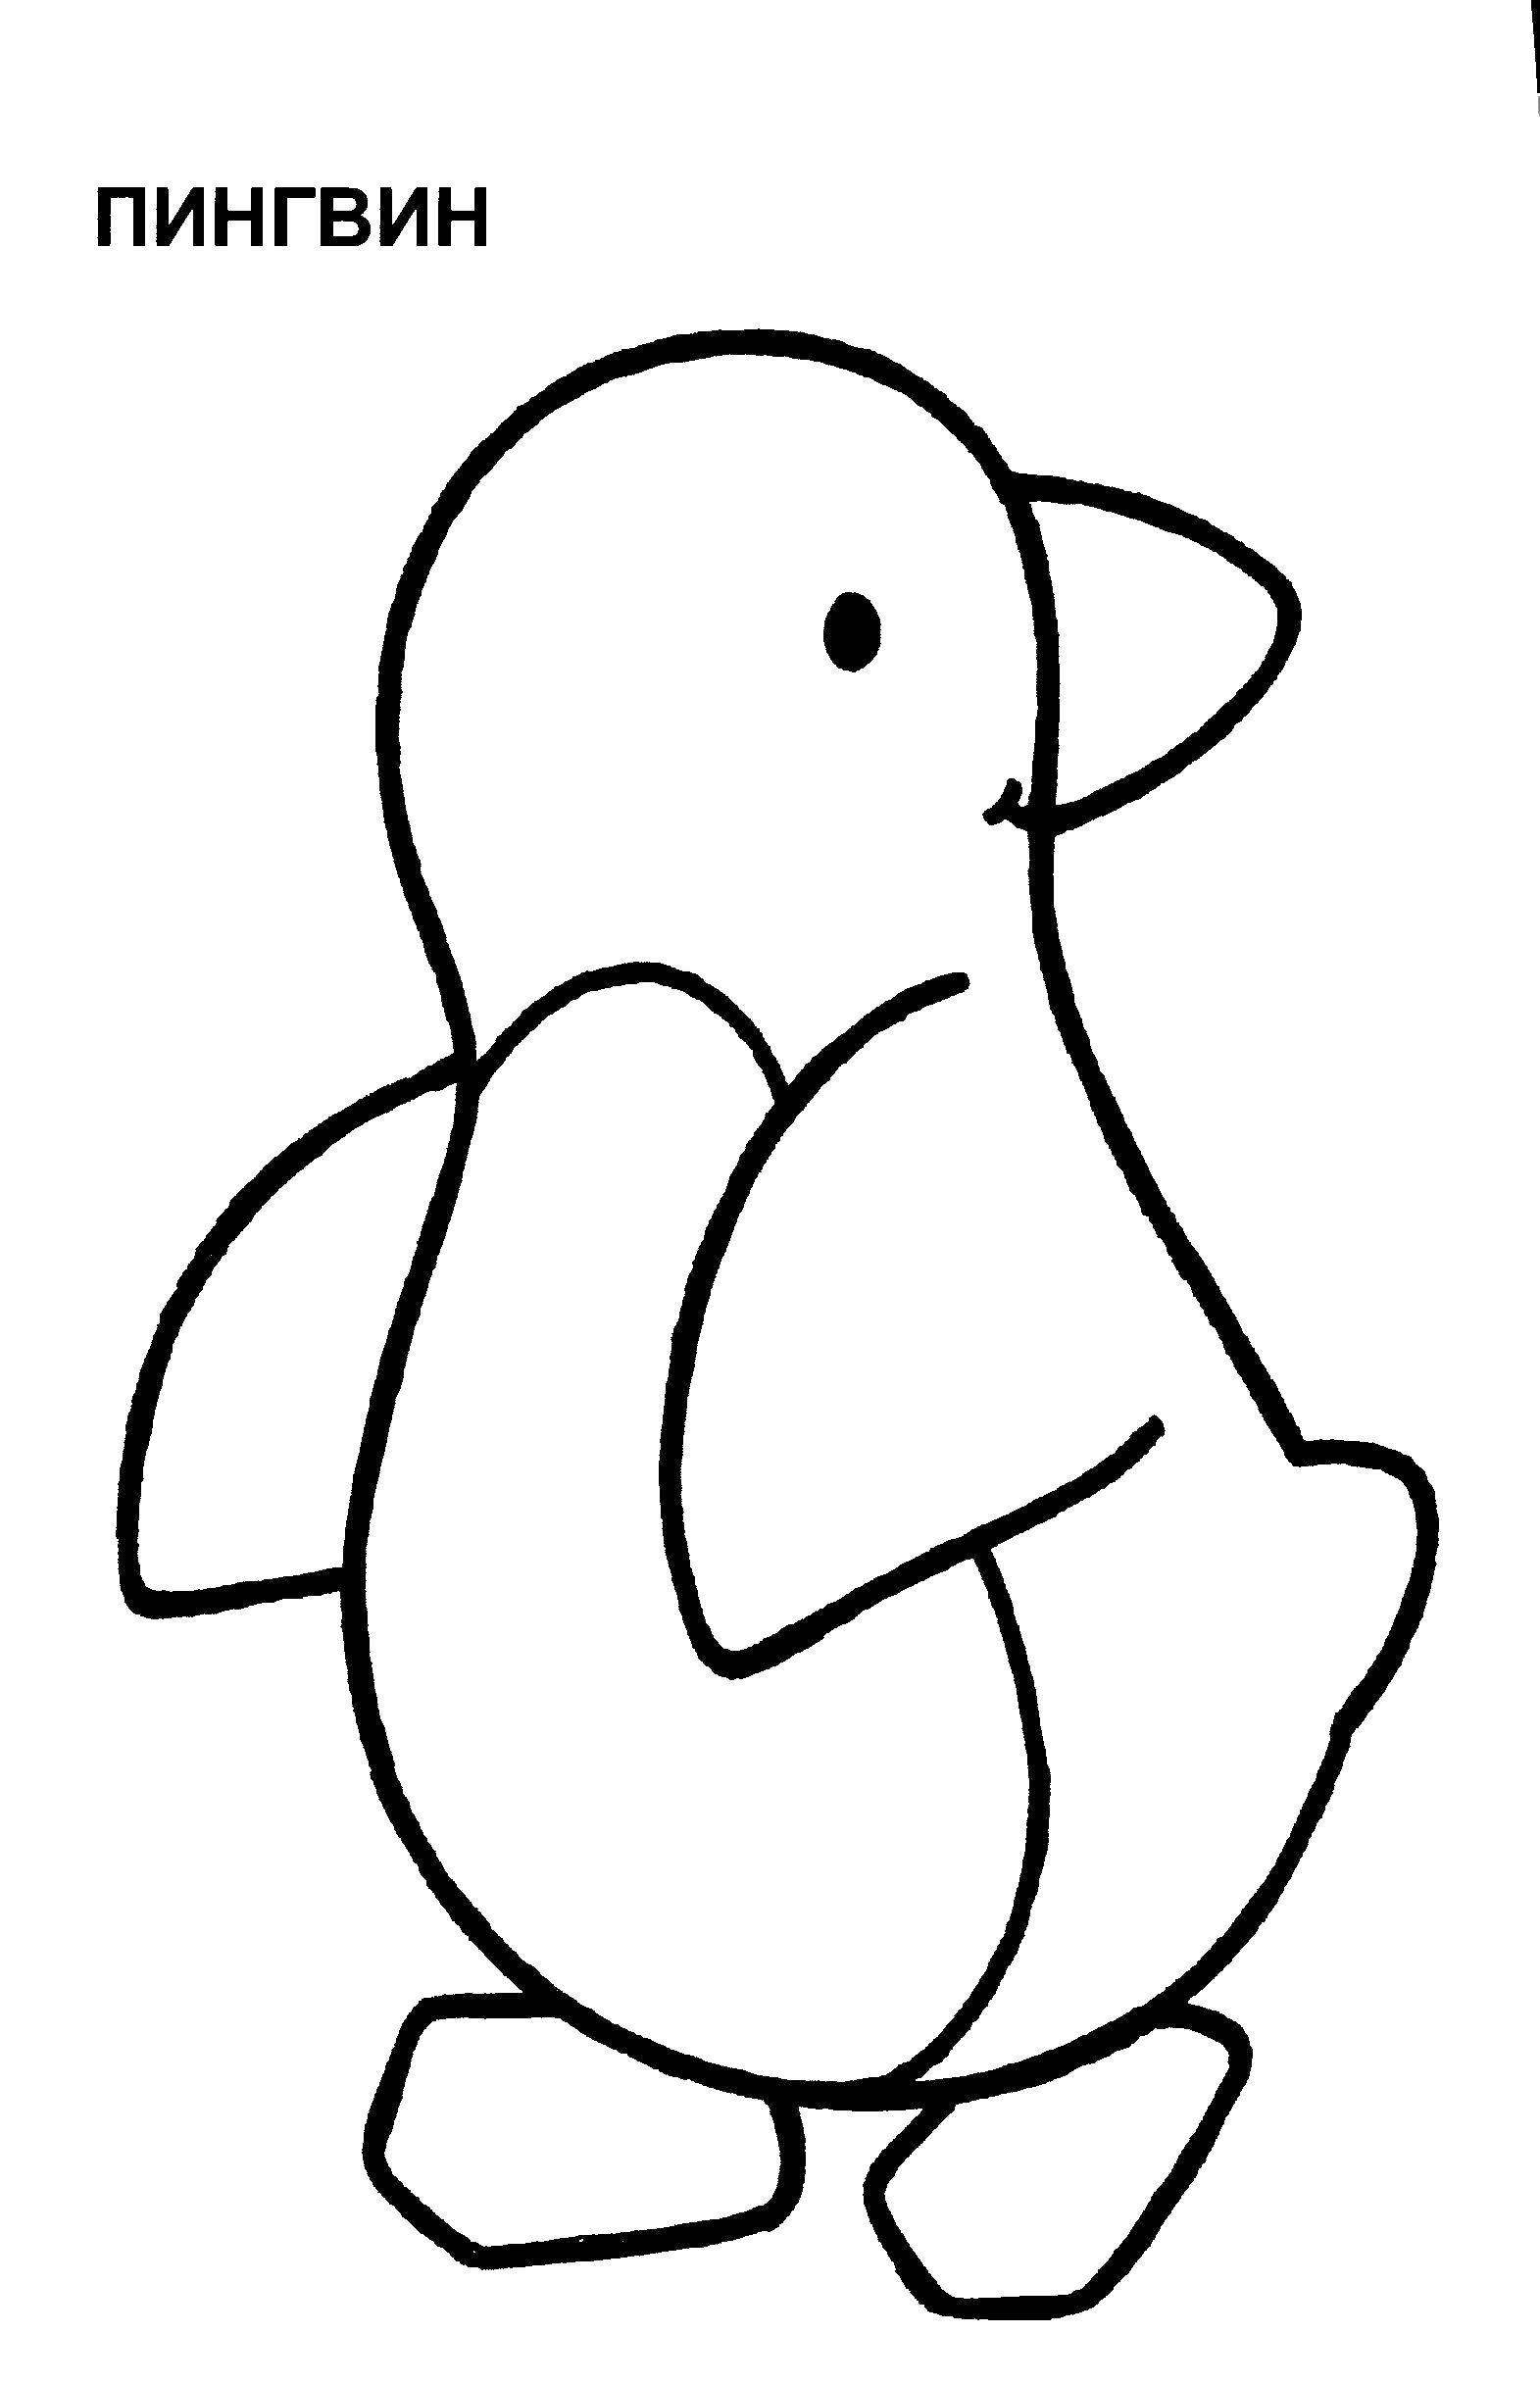   Пингвин